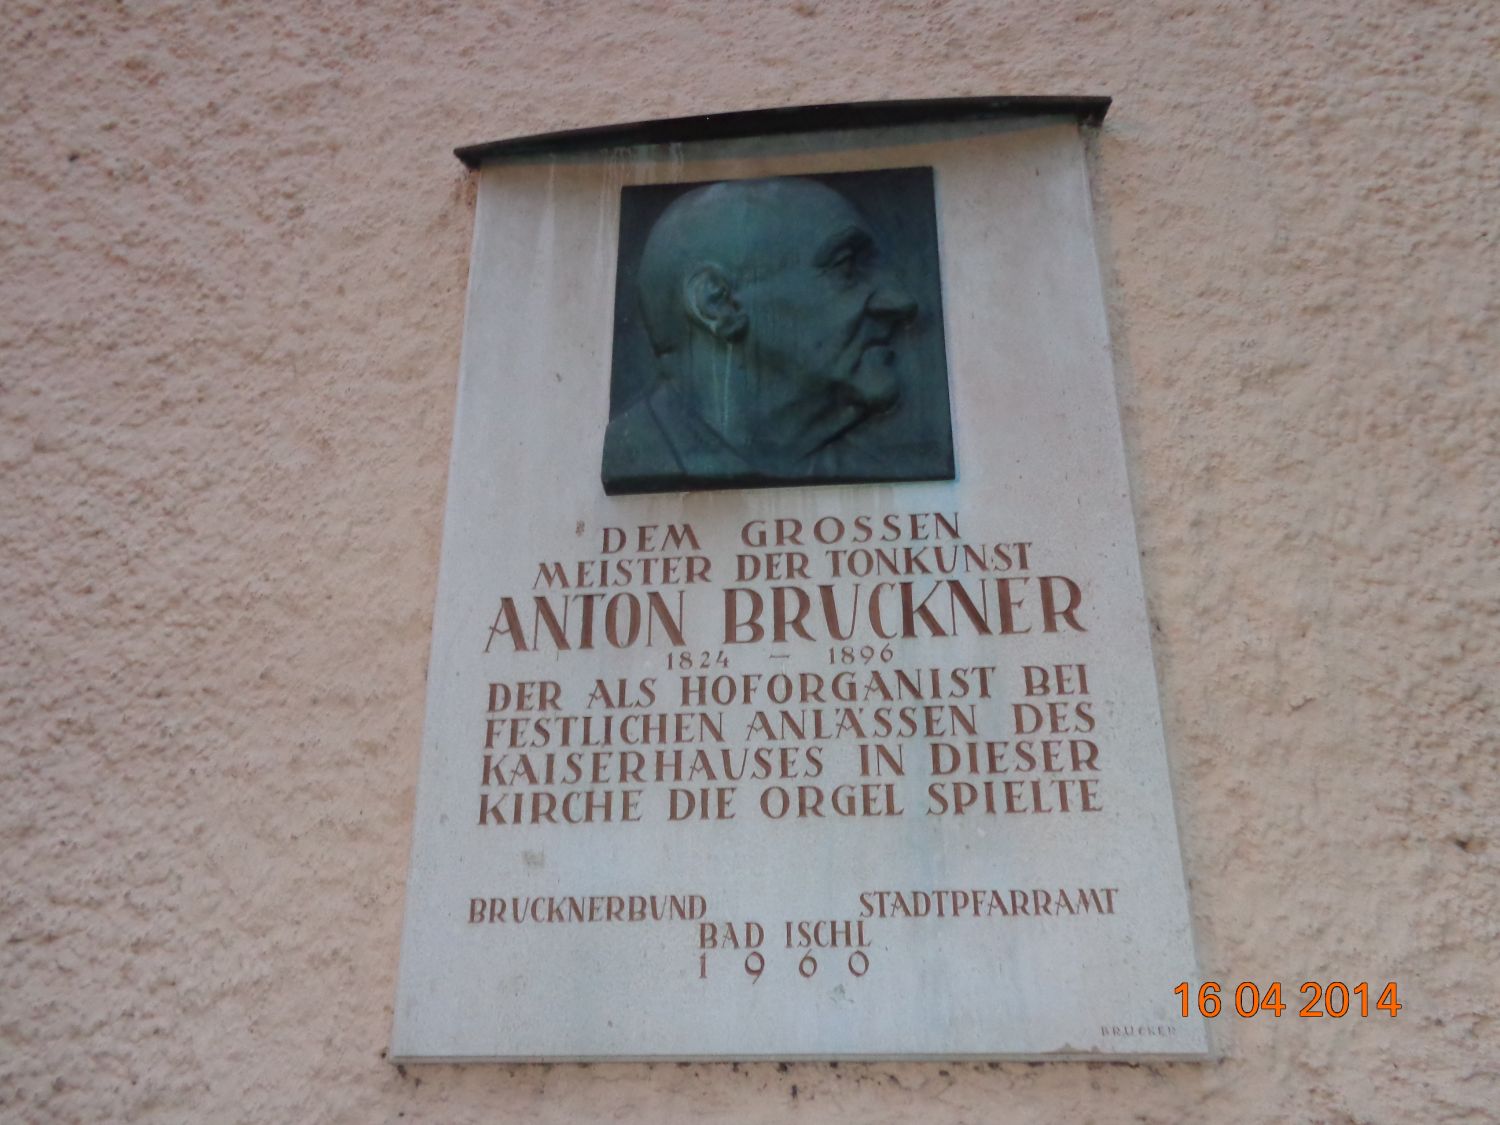 Anton Bruckner in Bad Ischl